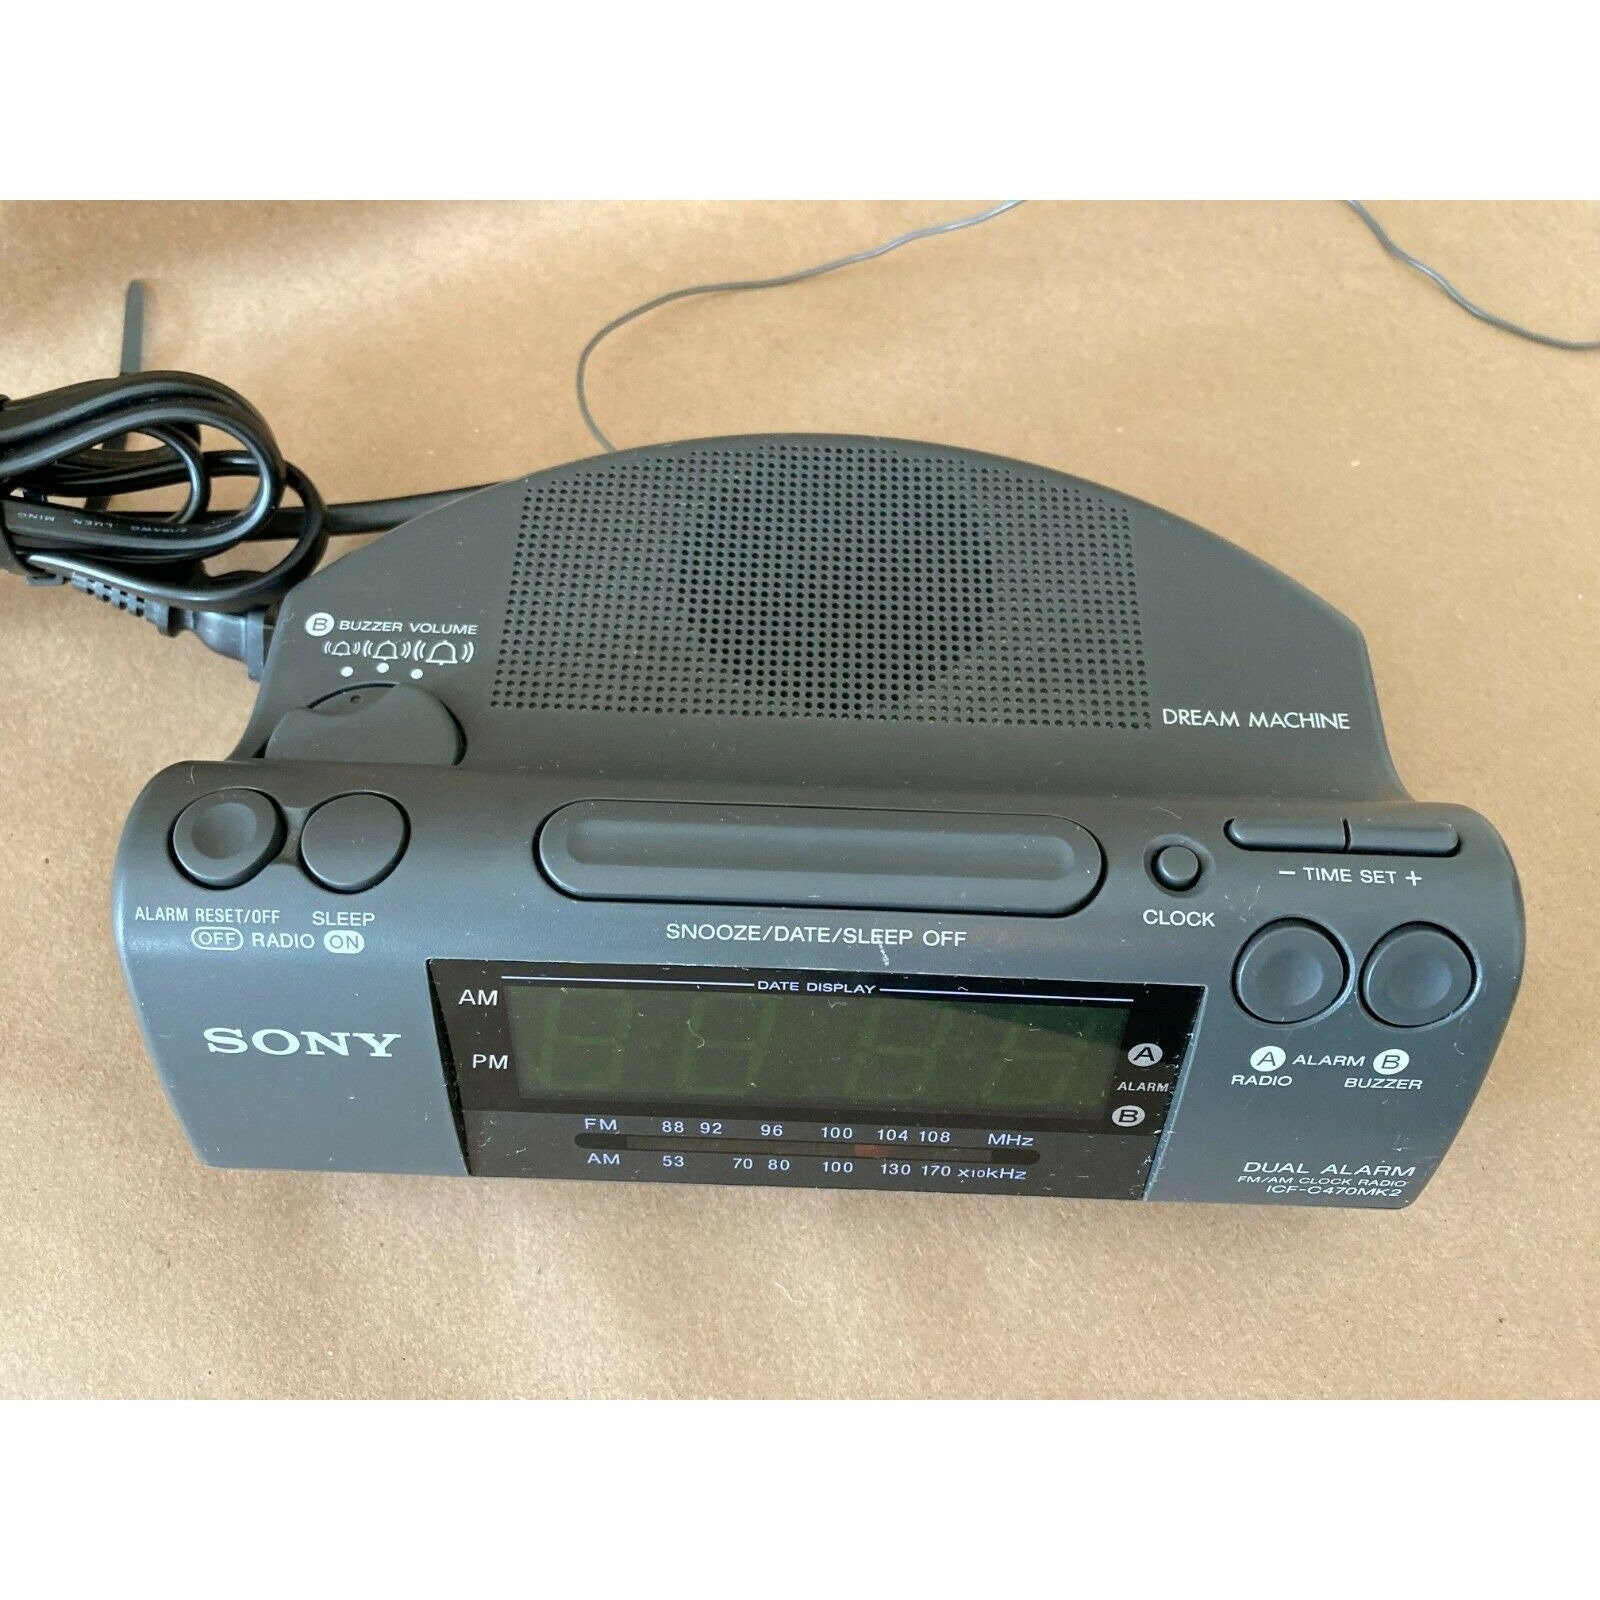 Sony Dream Machine ICF-C470MK2 Dual Alarm Fm/AM LED Clock Radio